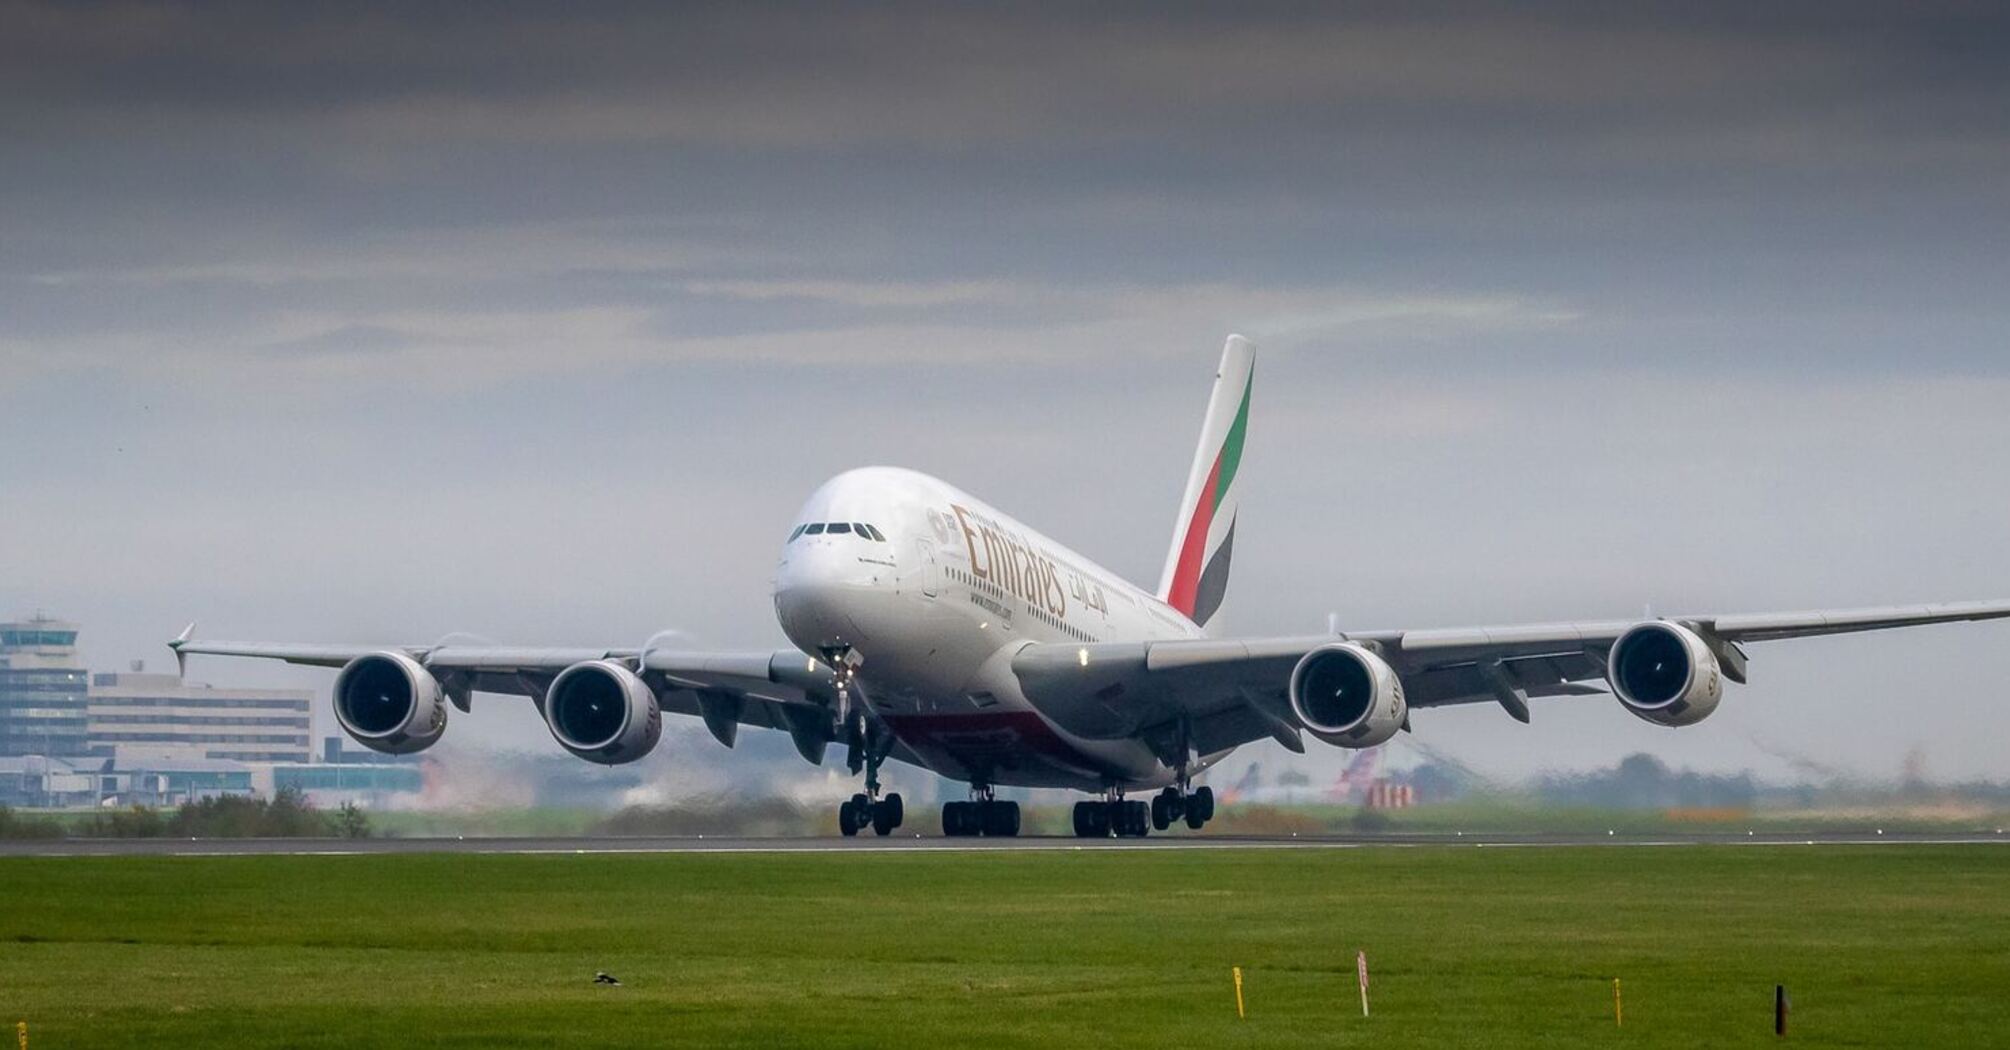 Emirates Boeing 777 landing on runway